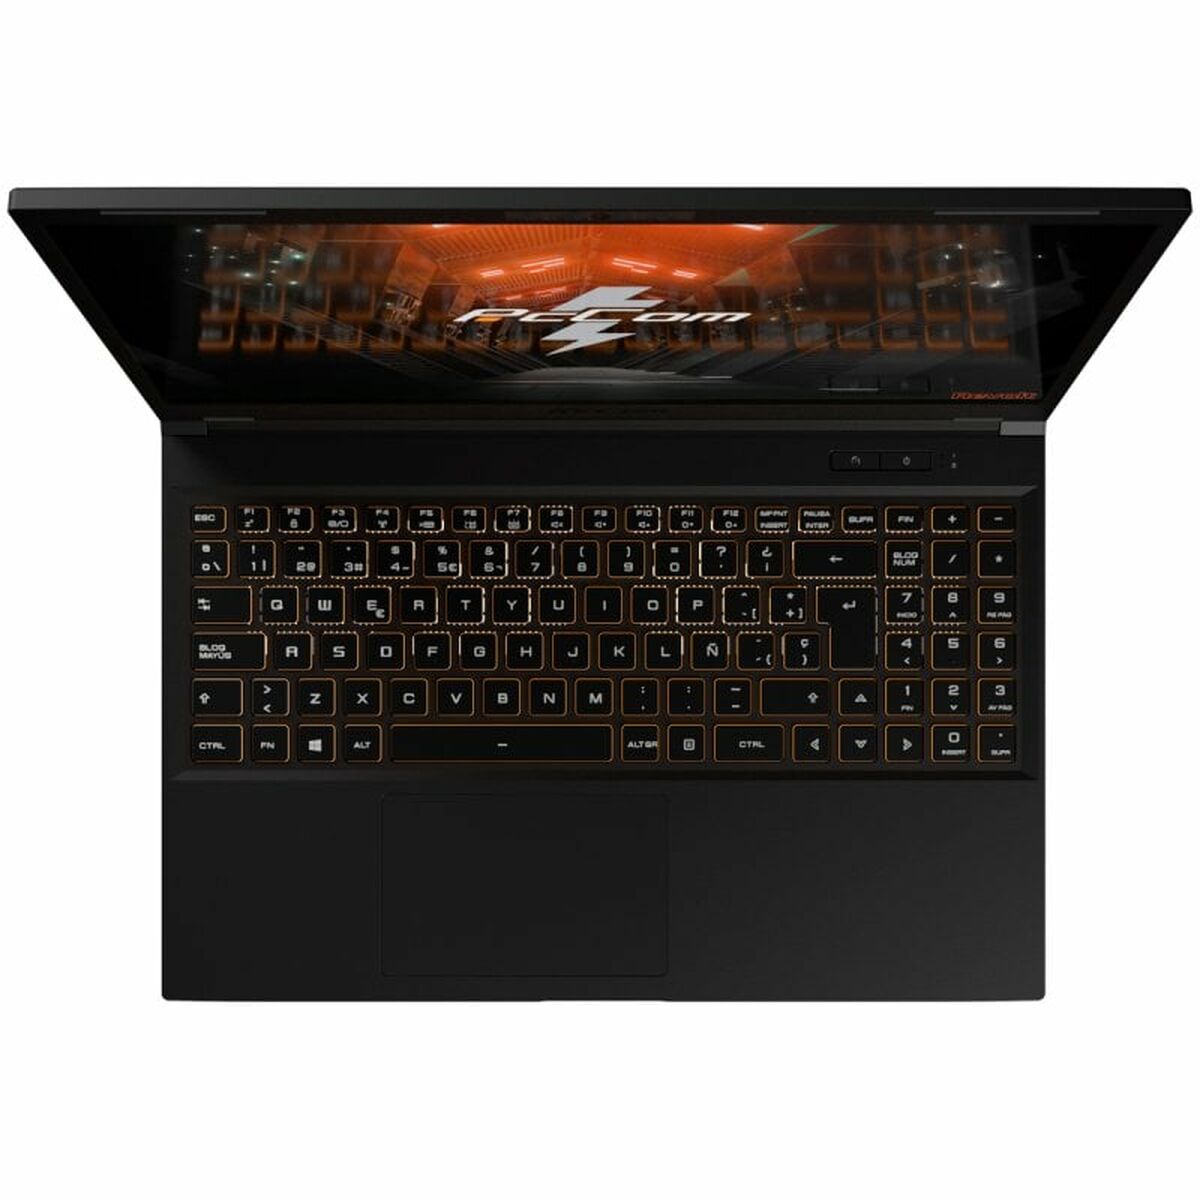 Laptop PcCom Revolt 3050 15,6" Intel Core i7-13700H 16 GB RAM 500 GB SSD NVIDIA GeForce RTX 3050 Qwerty Español